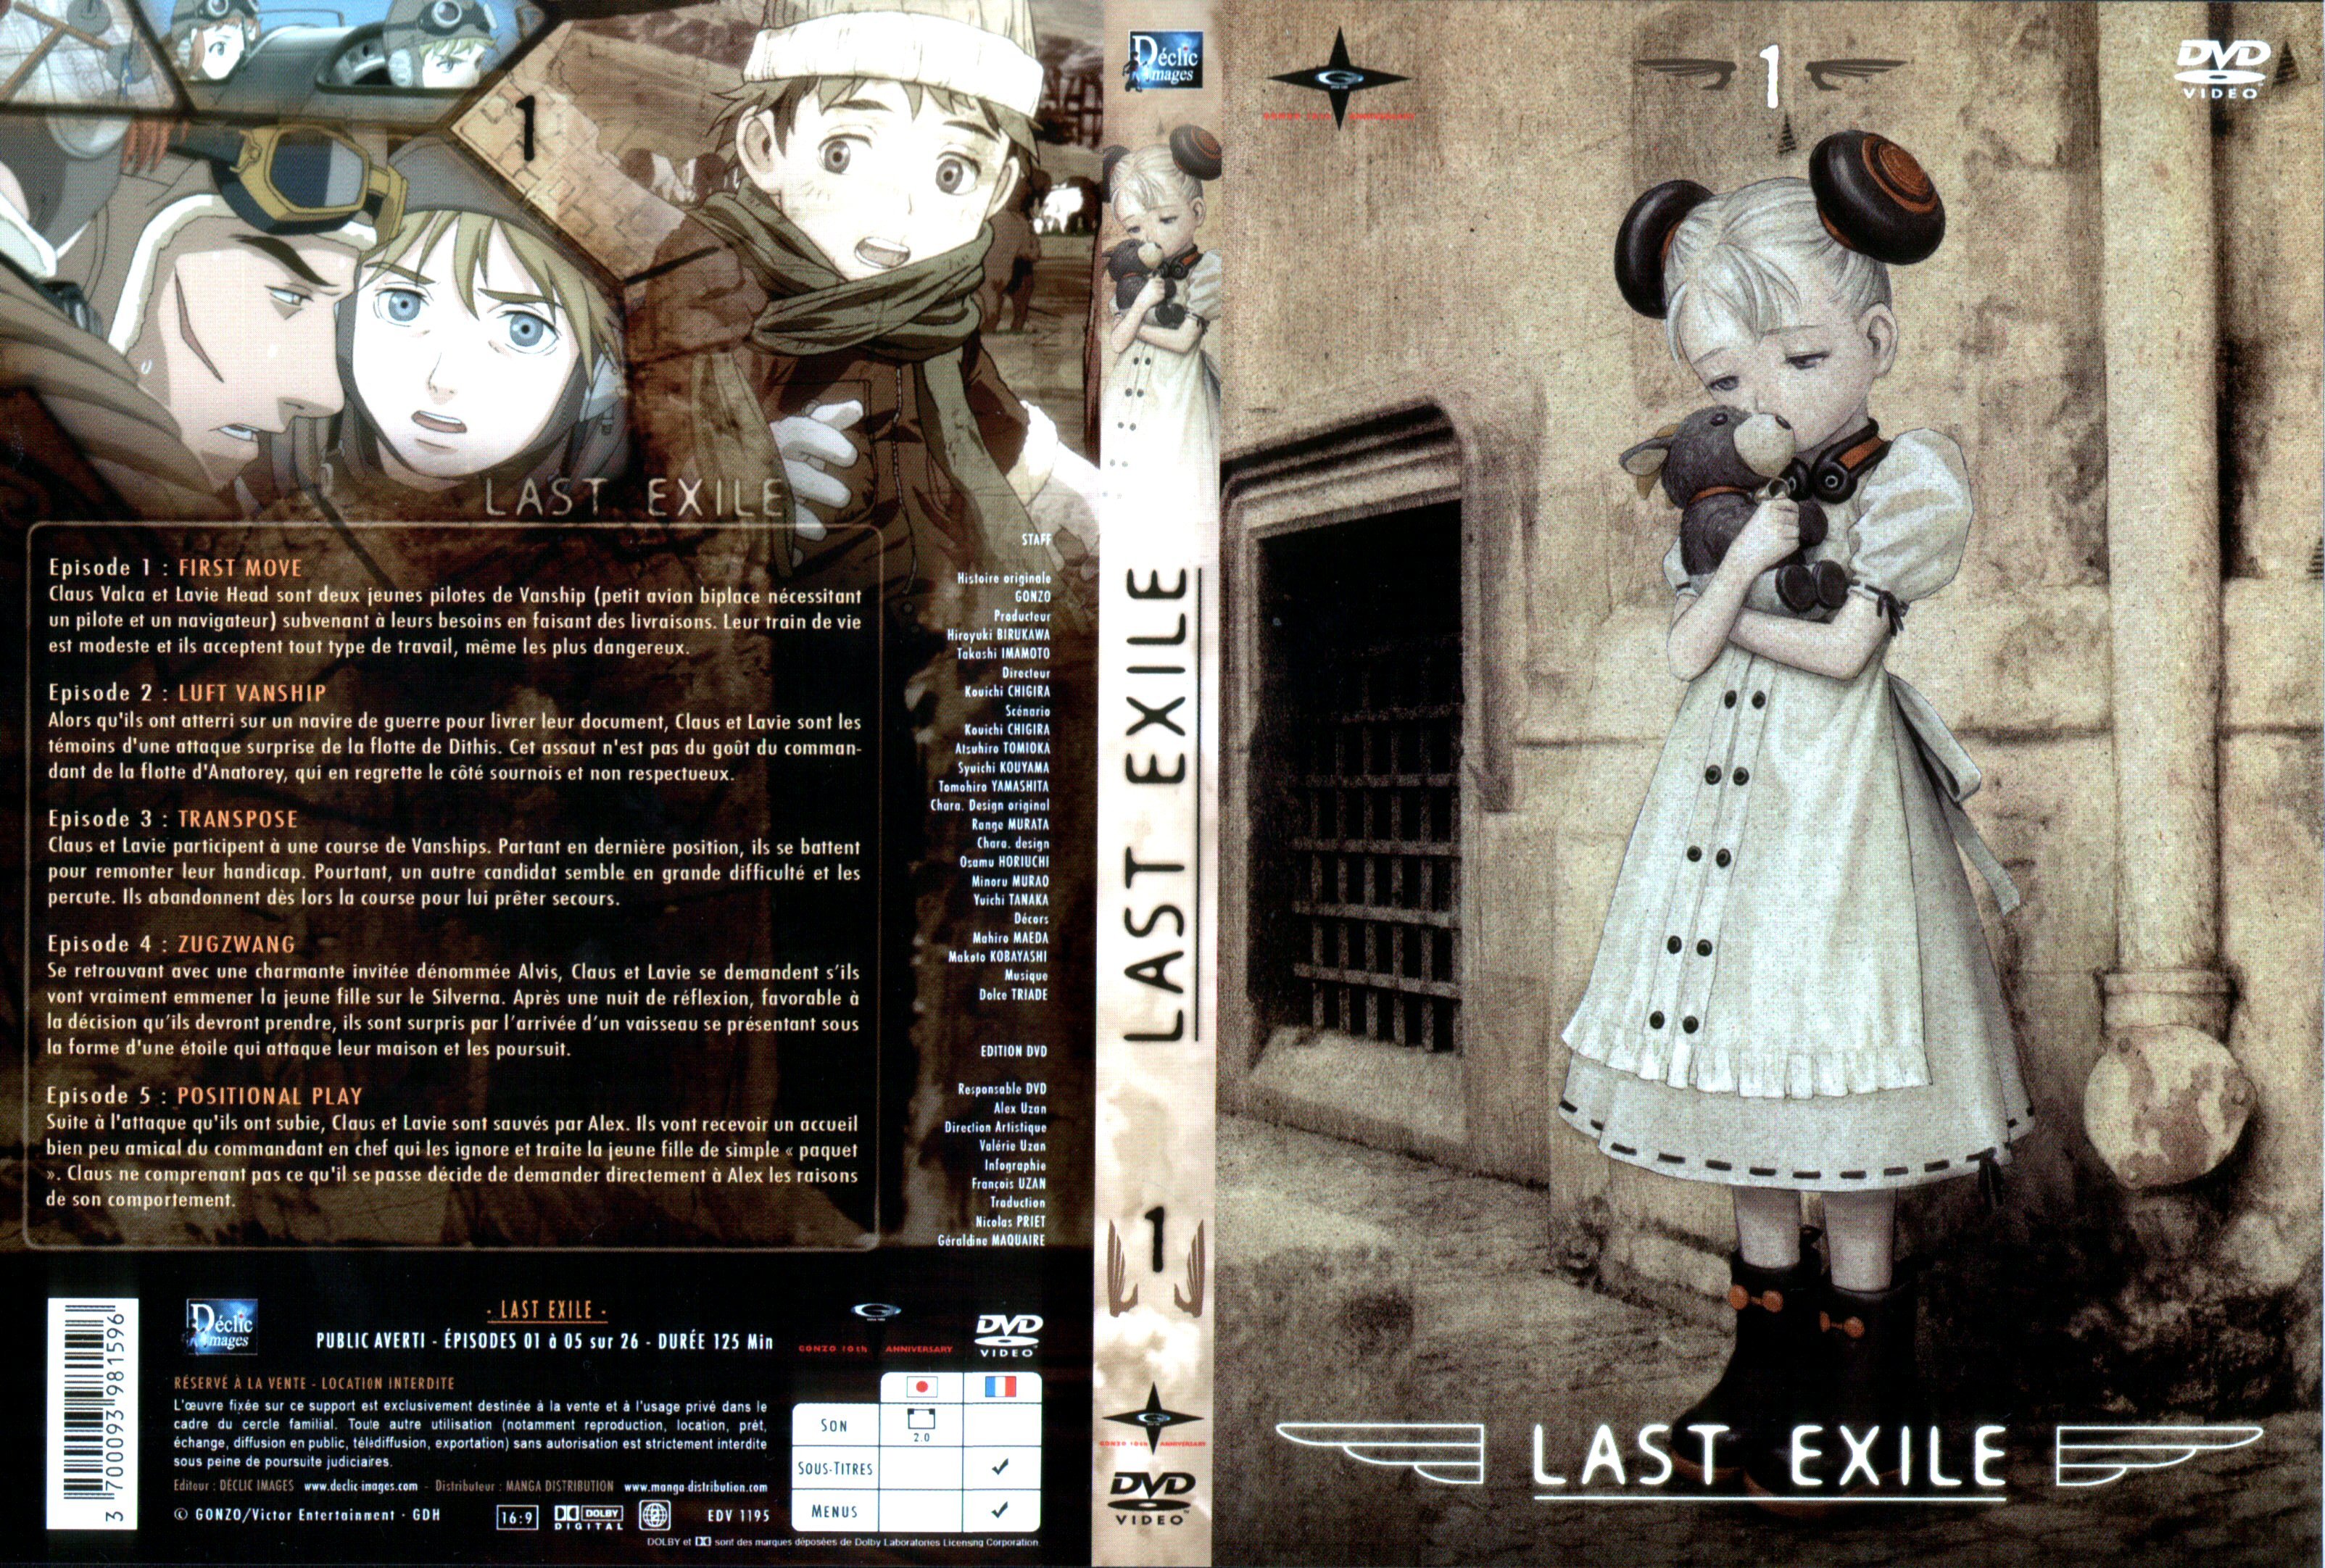 Jaquette DVD Last exile vol 1